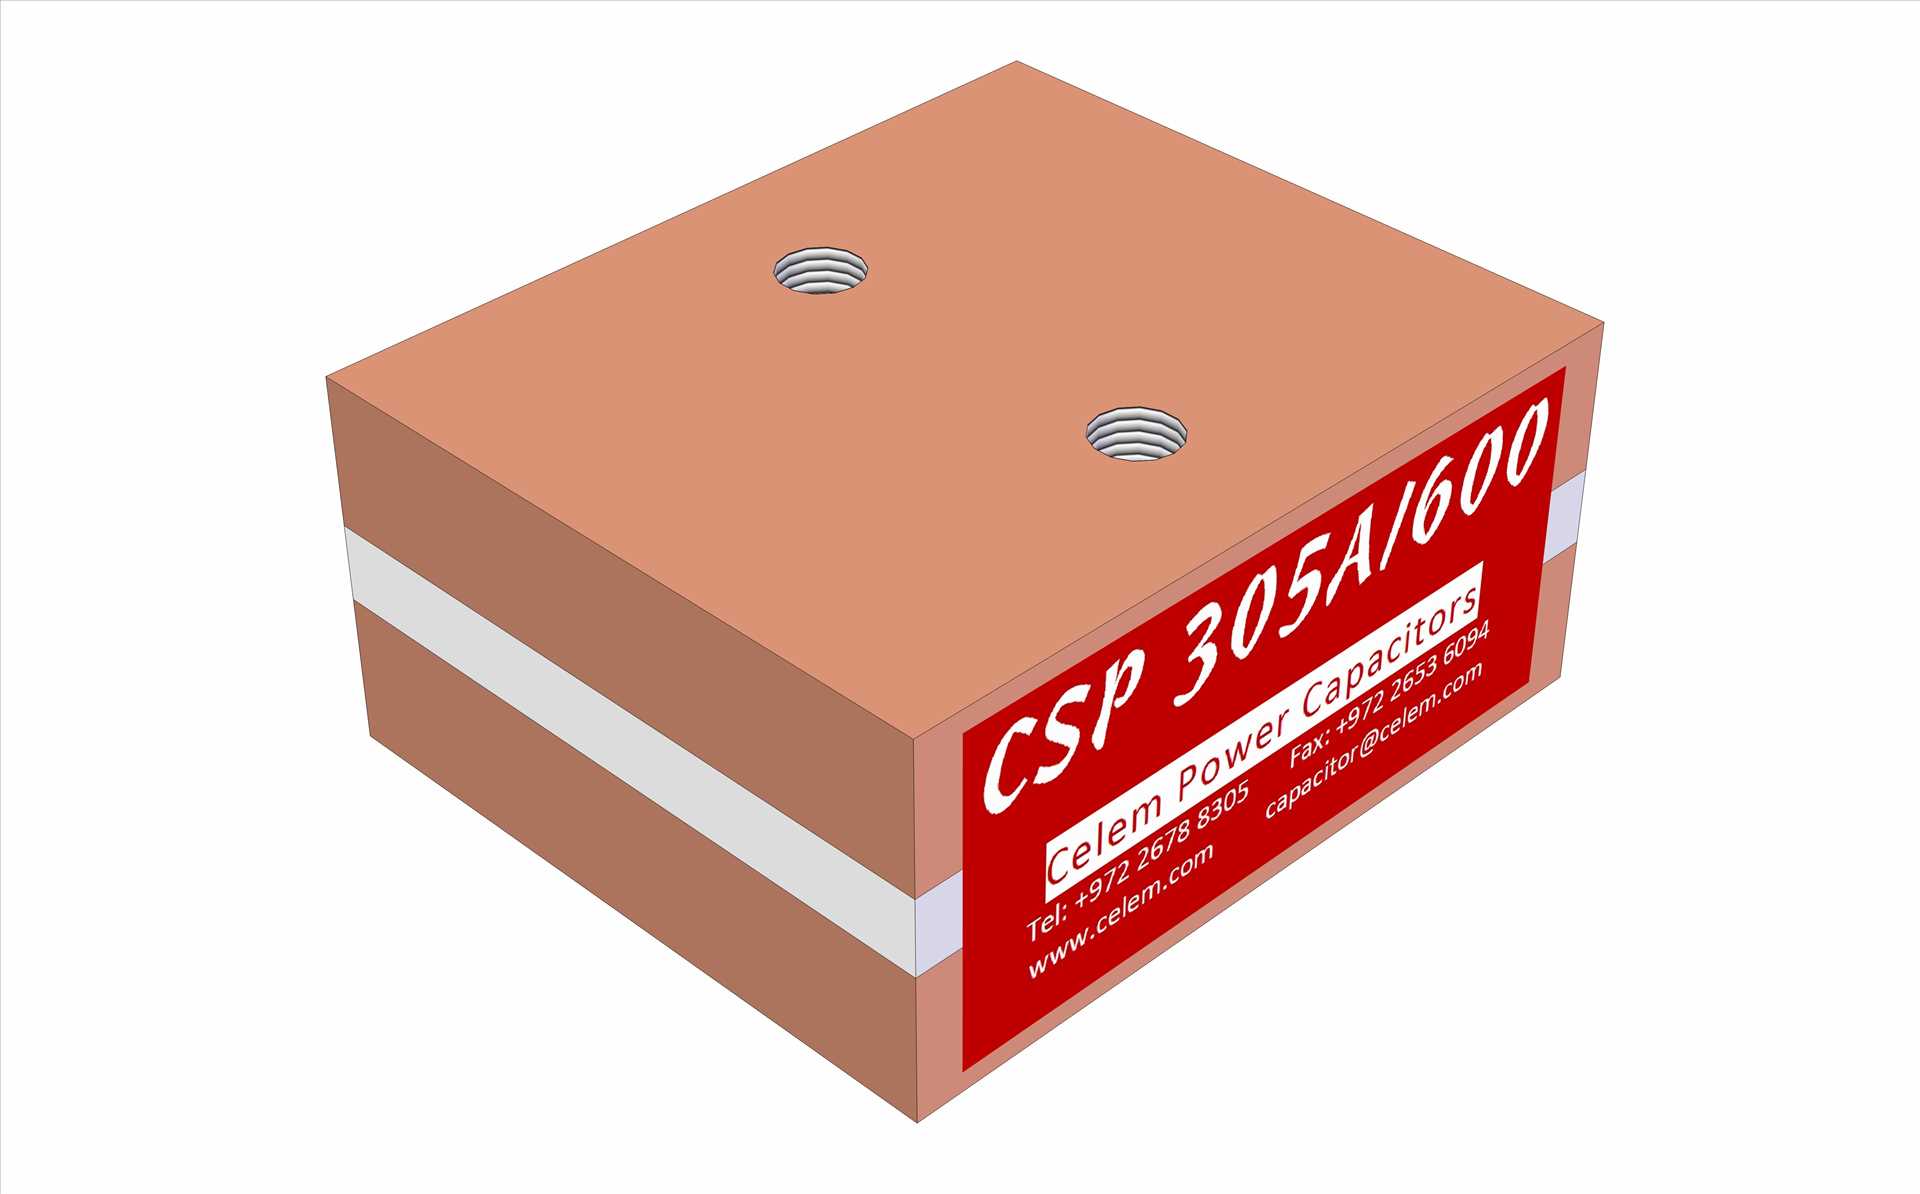 CSP 305A/600